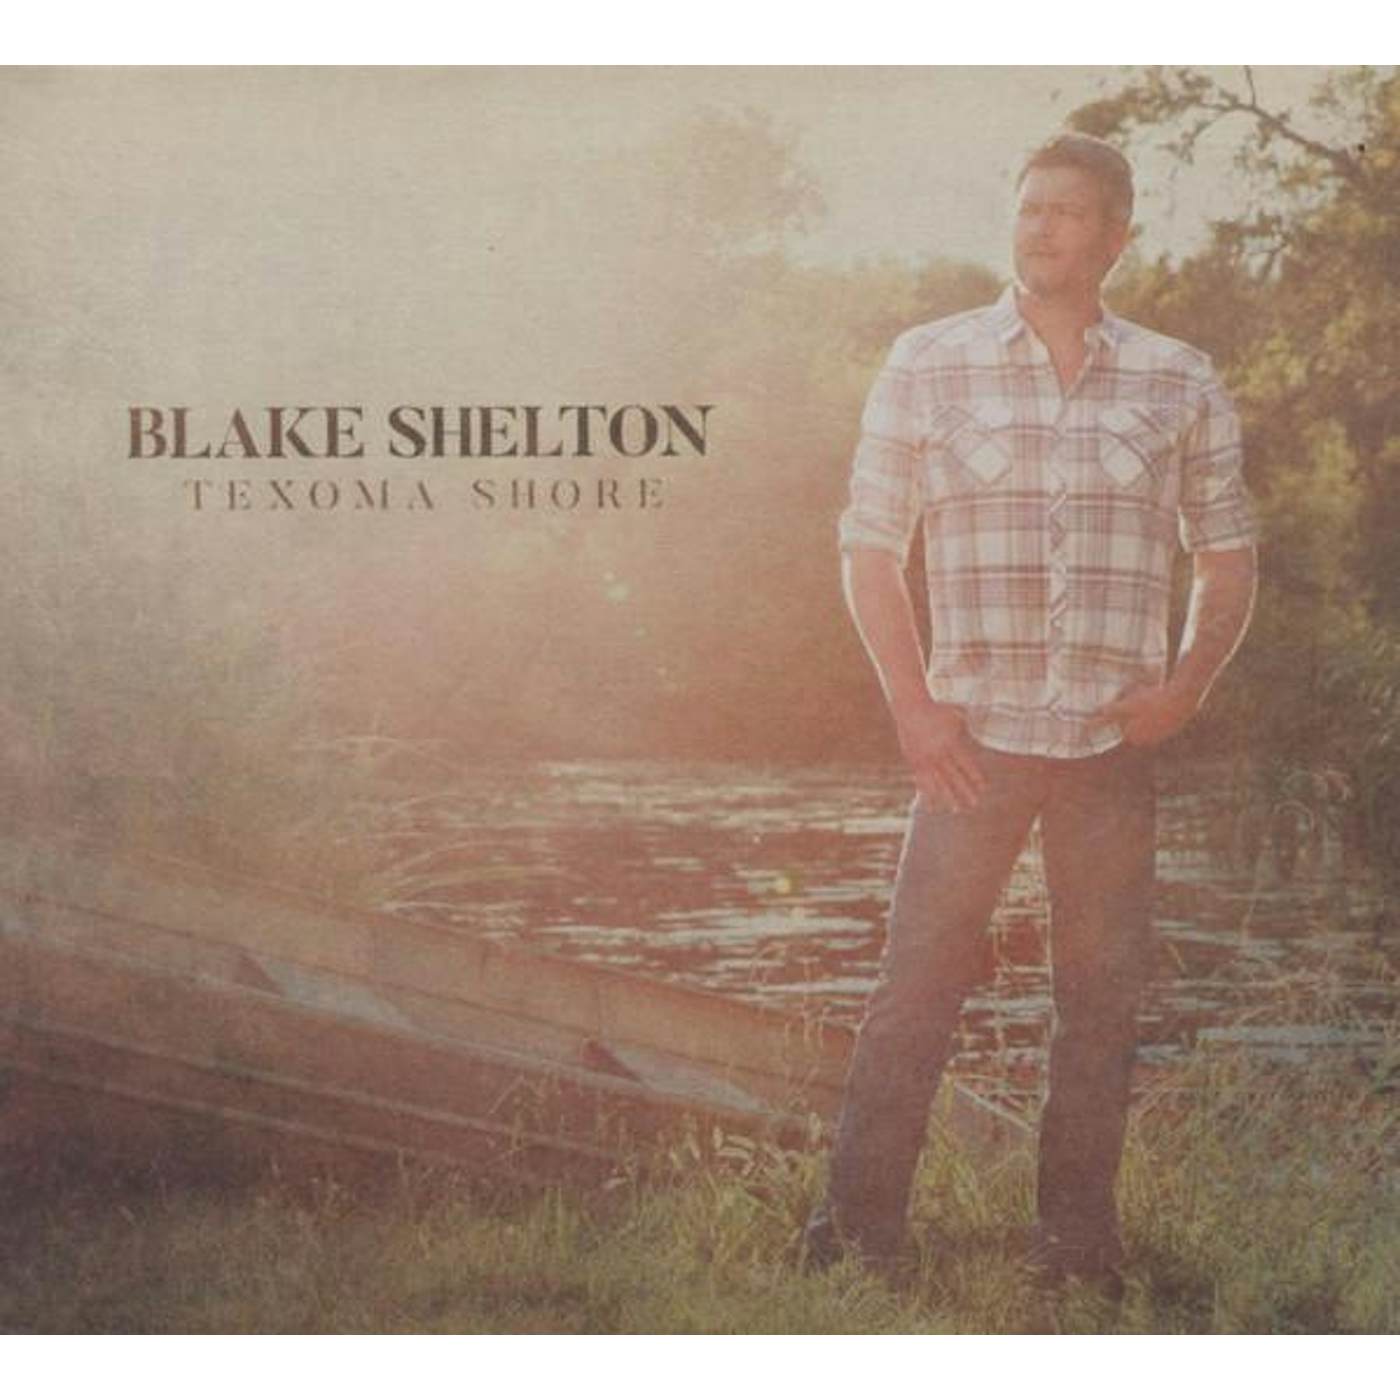 Blake Shelton TEXOMA SHORE CD